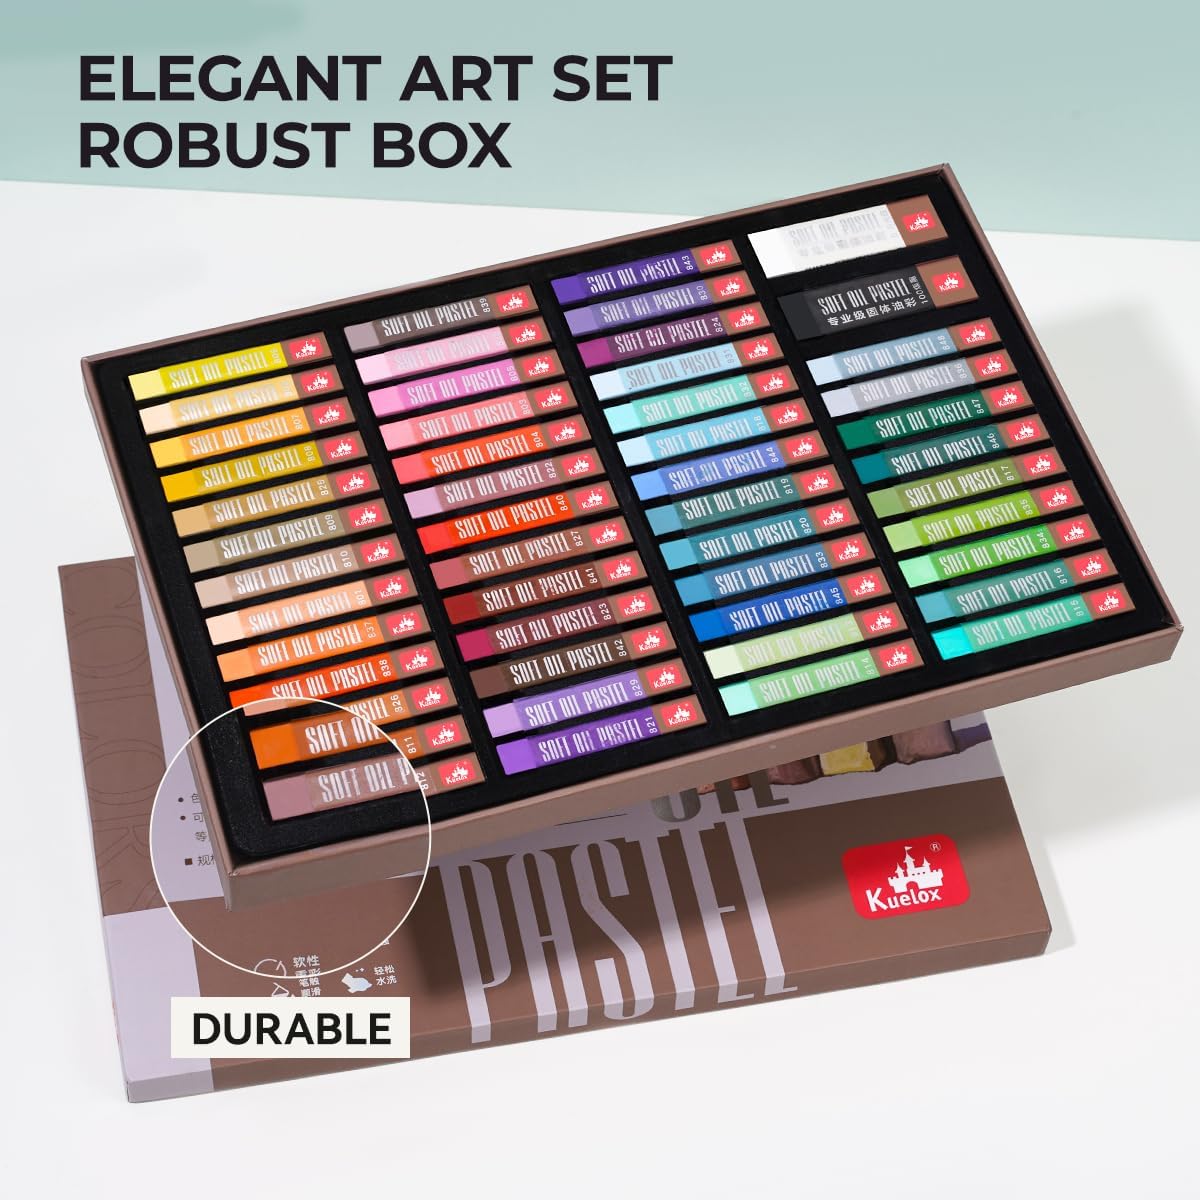 LIGHTWISH Pastels à l'huile pour artistes – 50 carrés comprenant 2 grands ensembles de pastels à l'huile noir et blanc (Morandi)